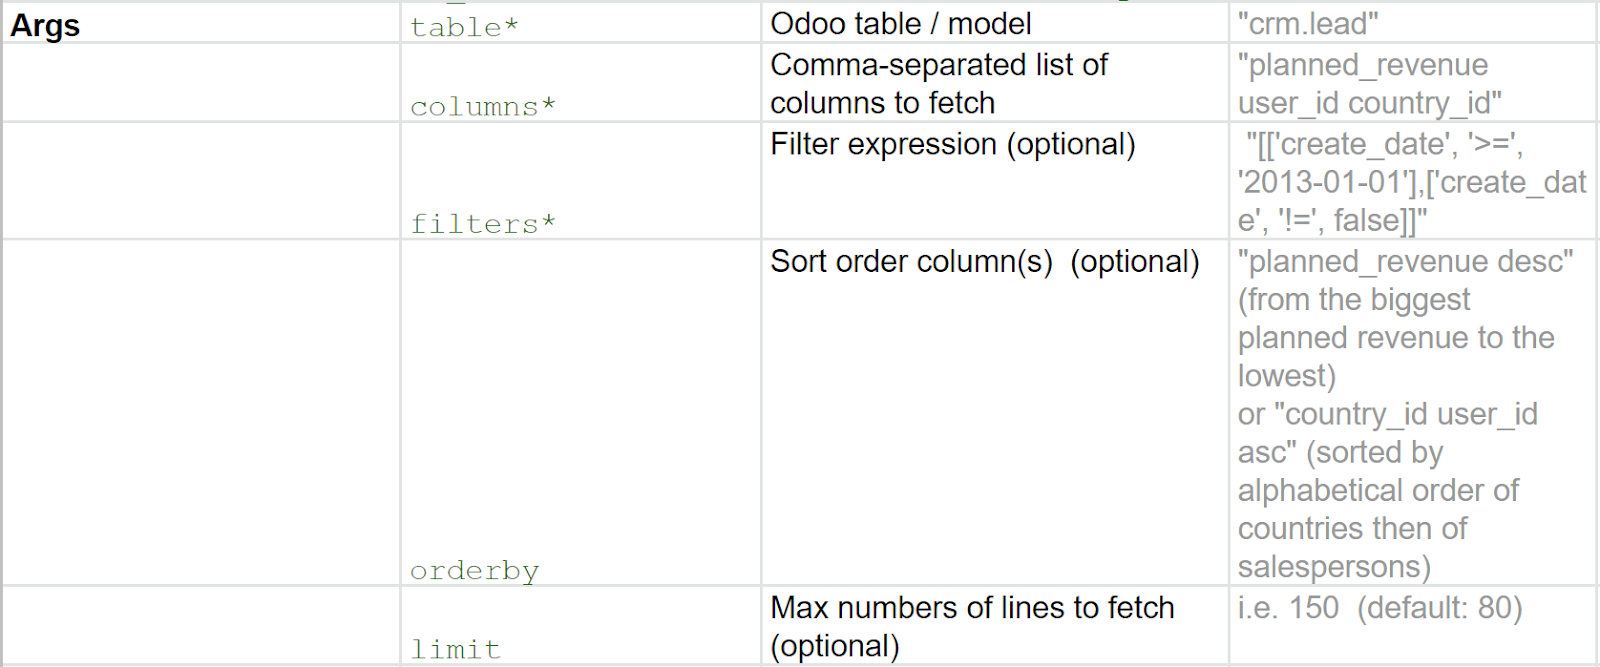 在Odoo中使用的参数示例表